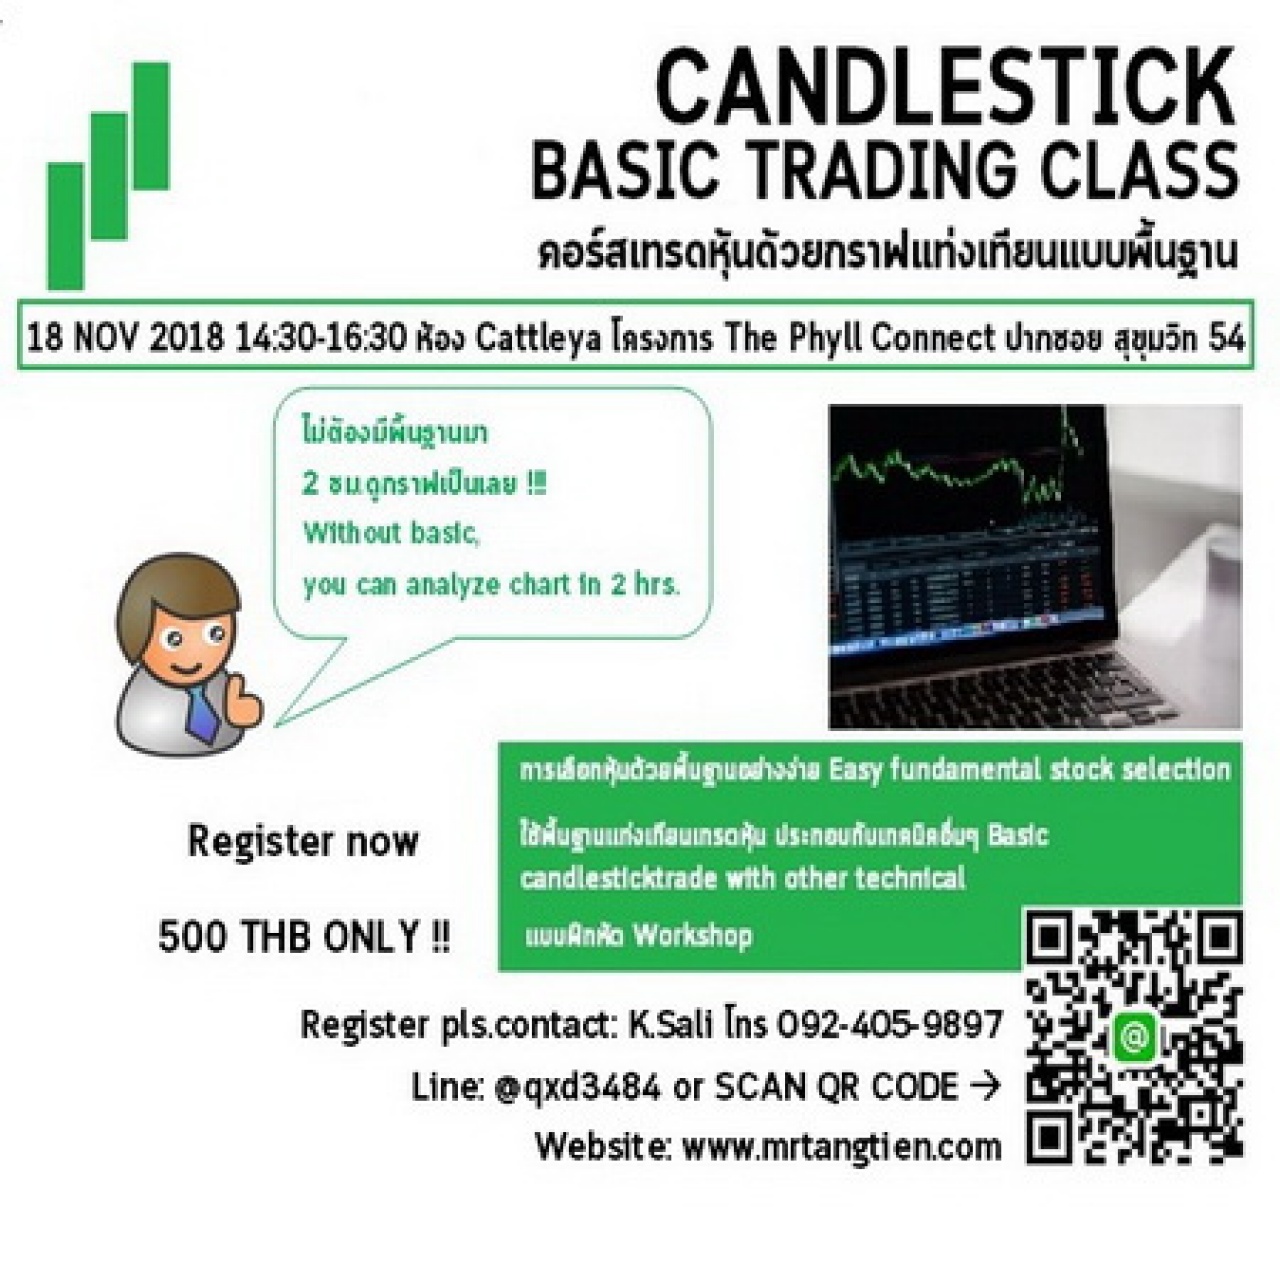 ฺคอร์สเทรดหุ้นด้วยกราฟแท่งเทียนแบบพื้นฐาน: Candlestick Basic Trading Class